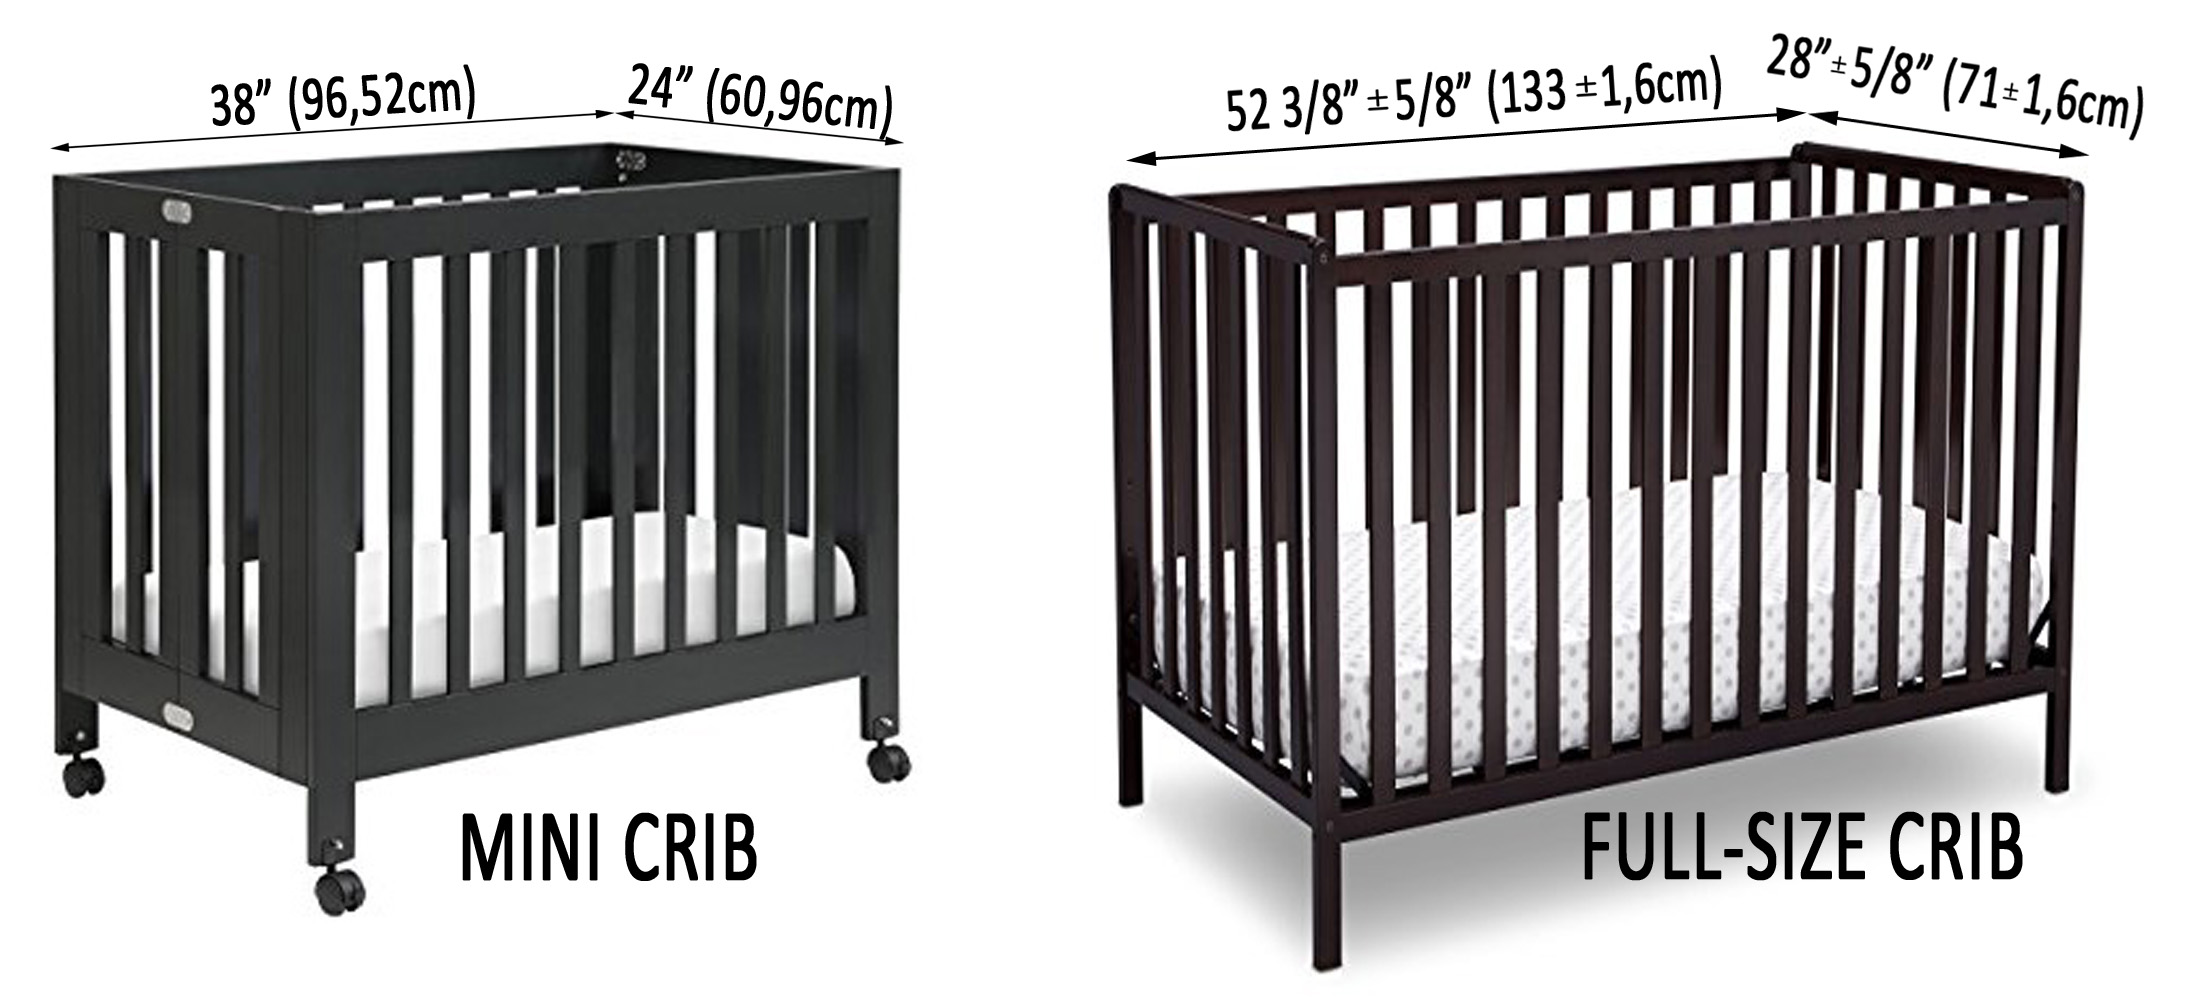 mini crib mattress dimensions